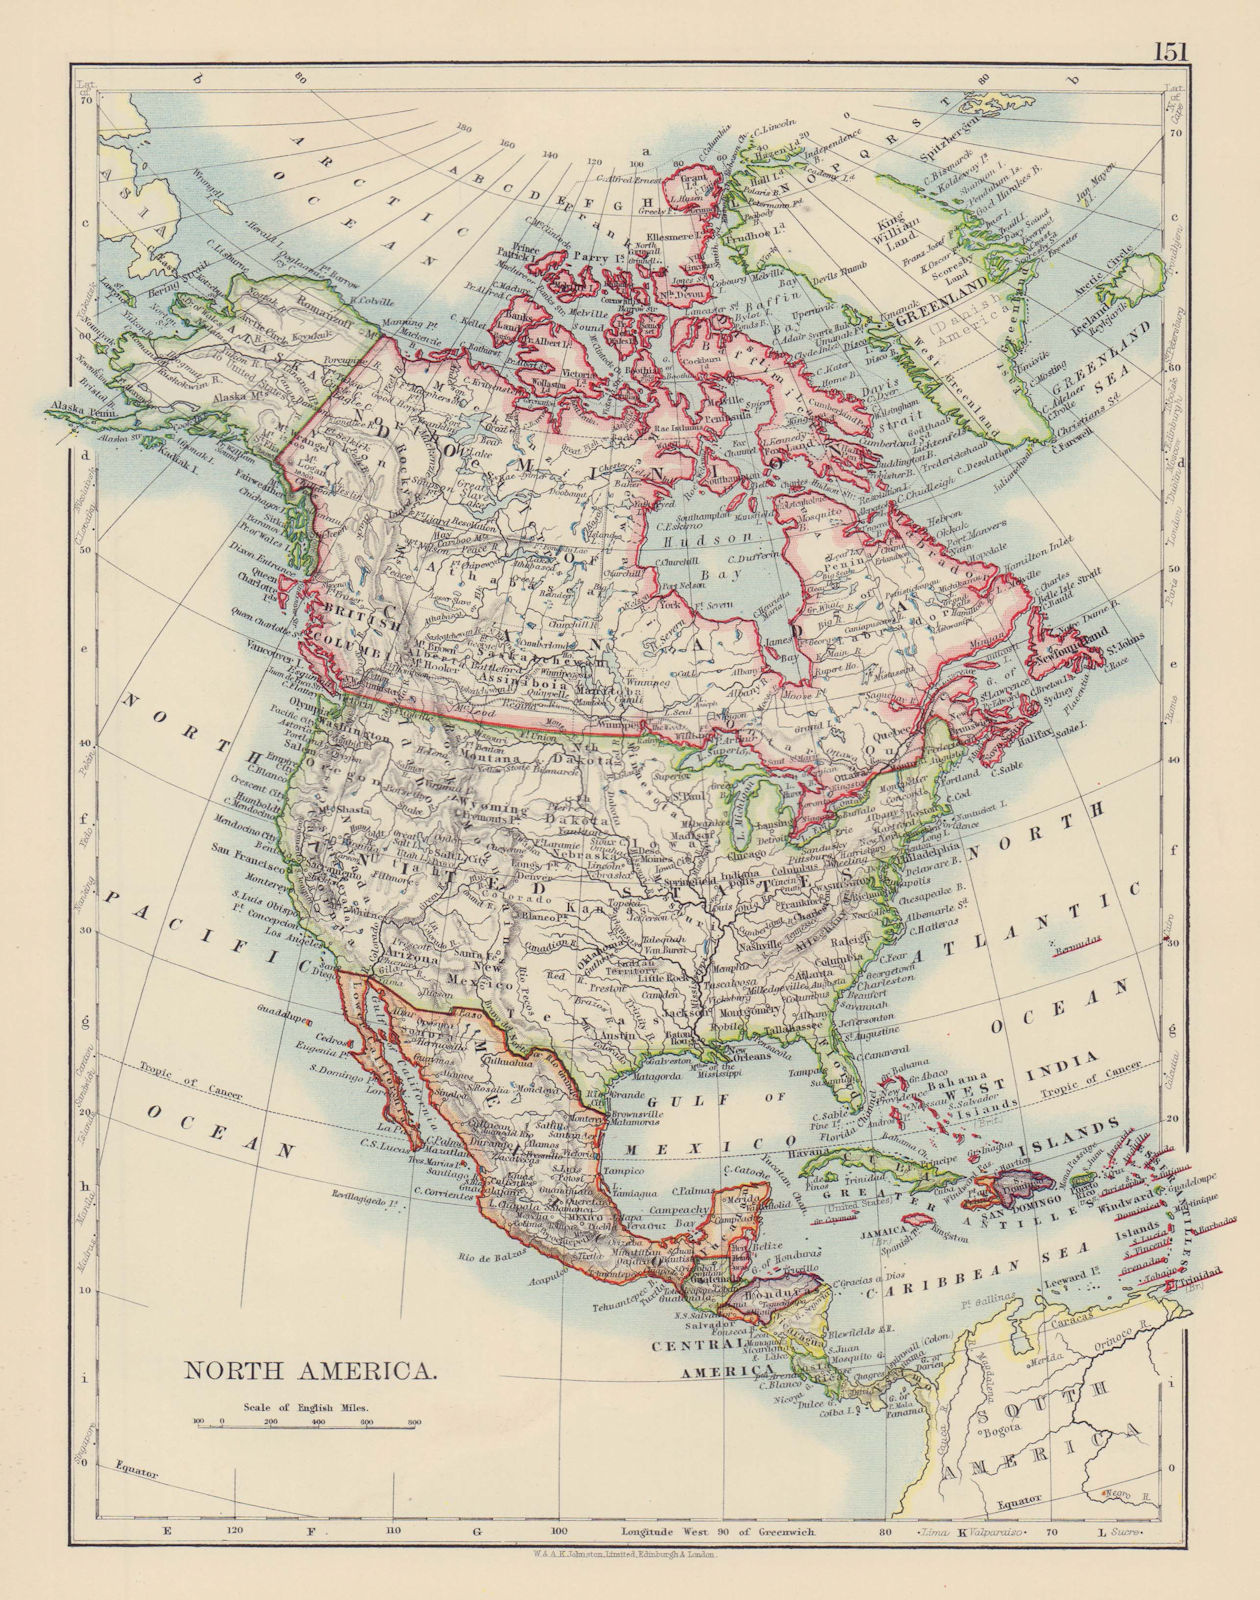 NORTH AMERICA POLITICAL. Greenland "Danish America" USA Canada Mexico 1901 map